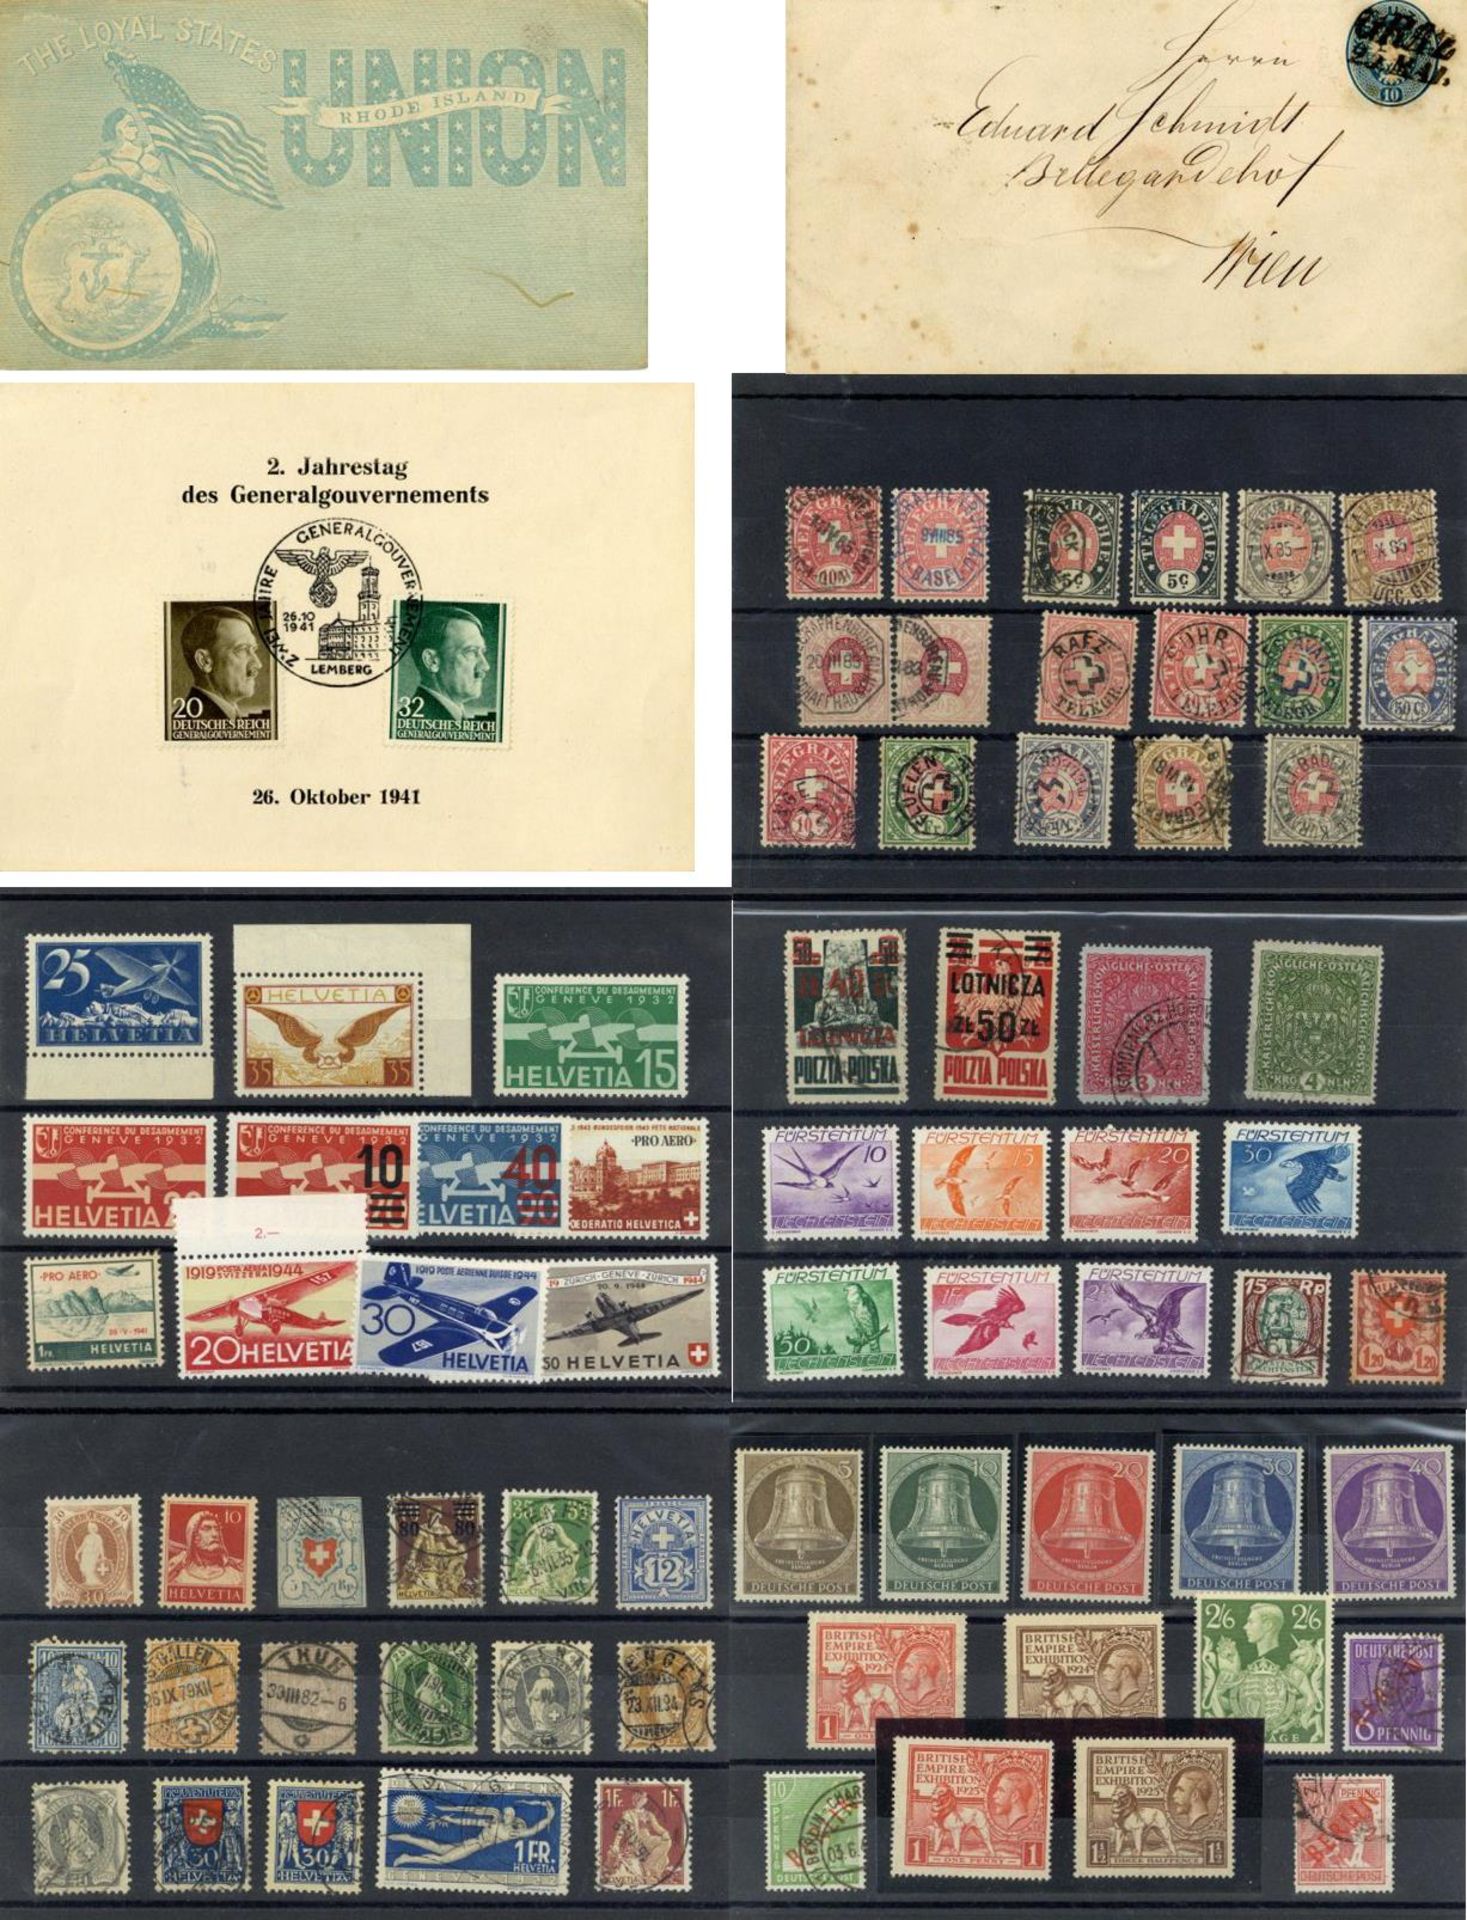 EUROPA, etwas Übersee, ca. 1850/1990, dabei Marken, Briefe, Ganzsachen, Fundgrube, teils